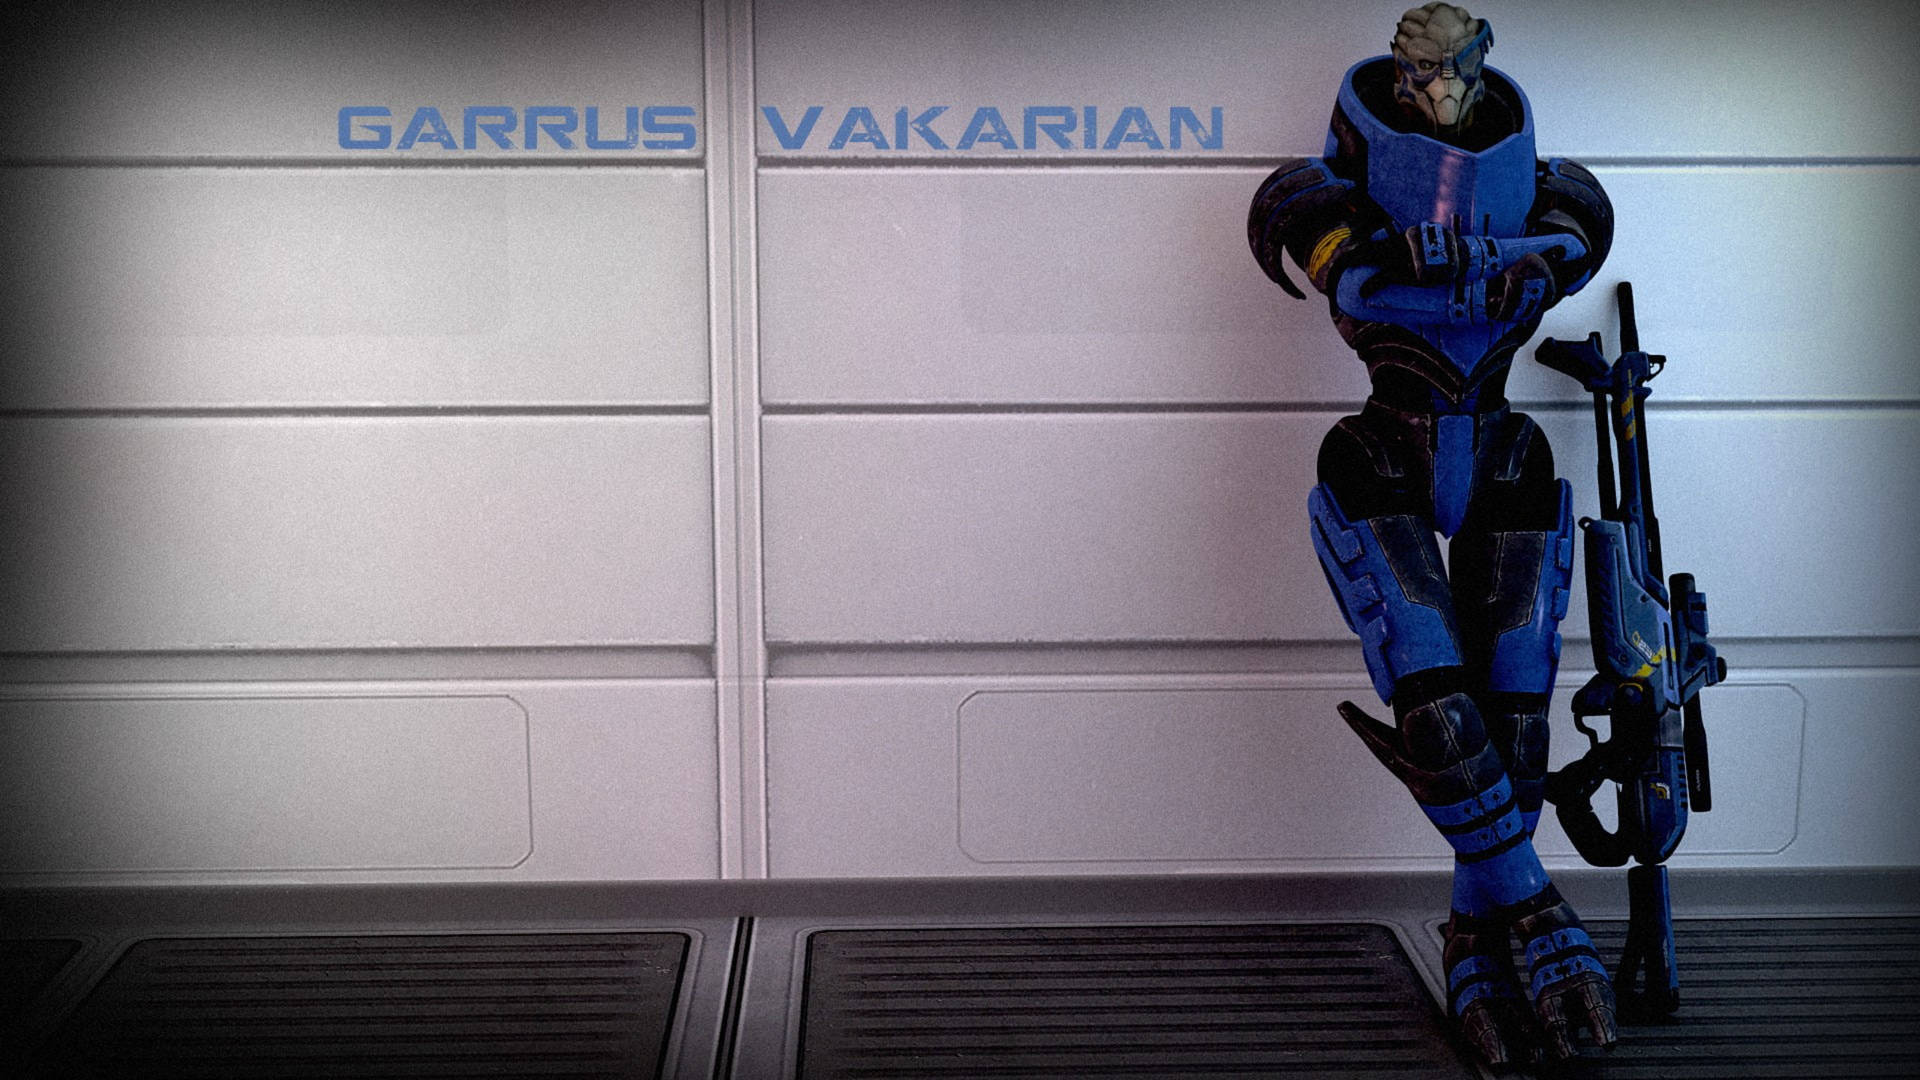 Mass Effect Garrus Digital Cover Wallpaper